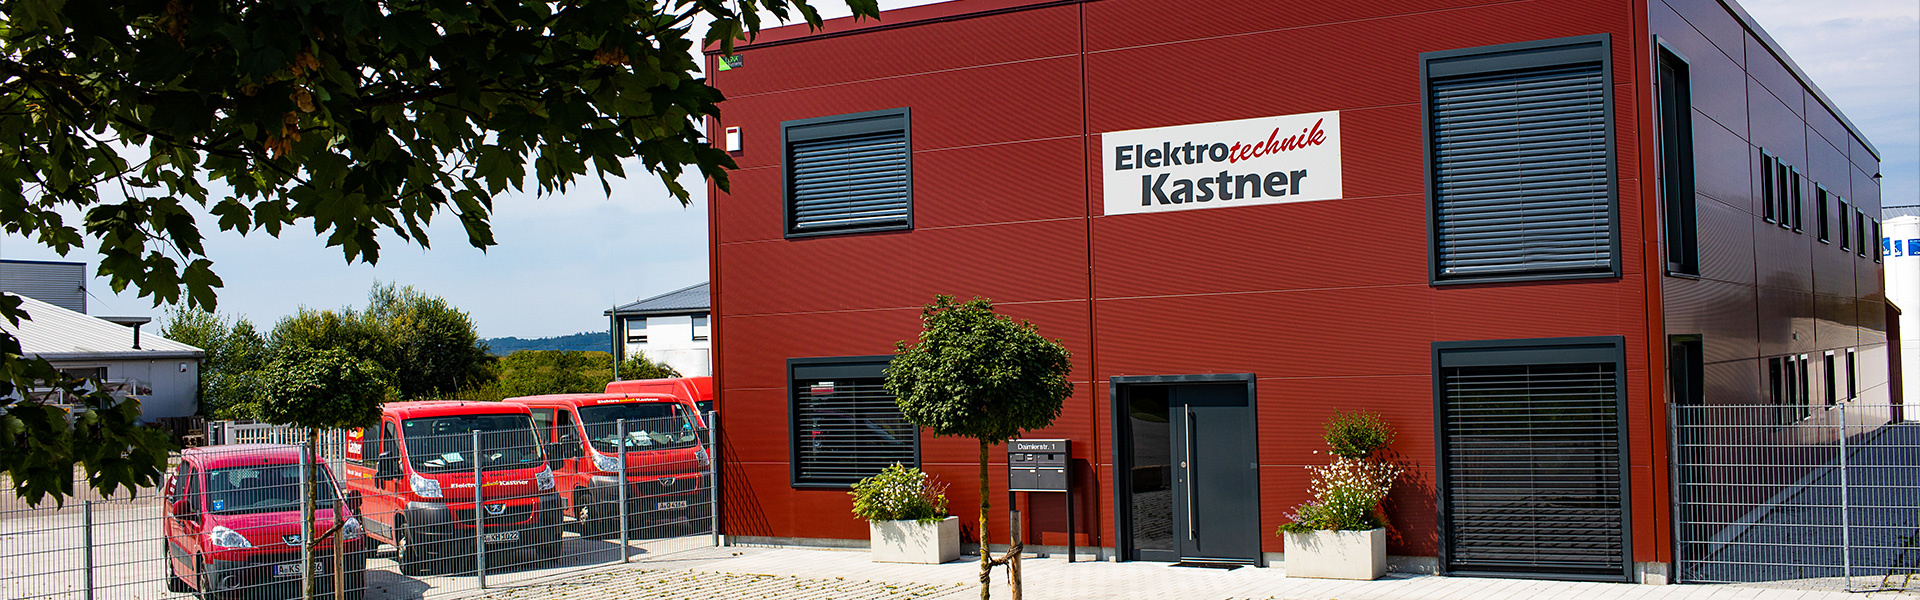 Elektrotechnik Kastner GmbH & Co. KG in Westendorf